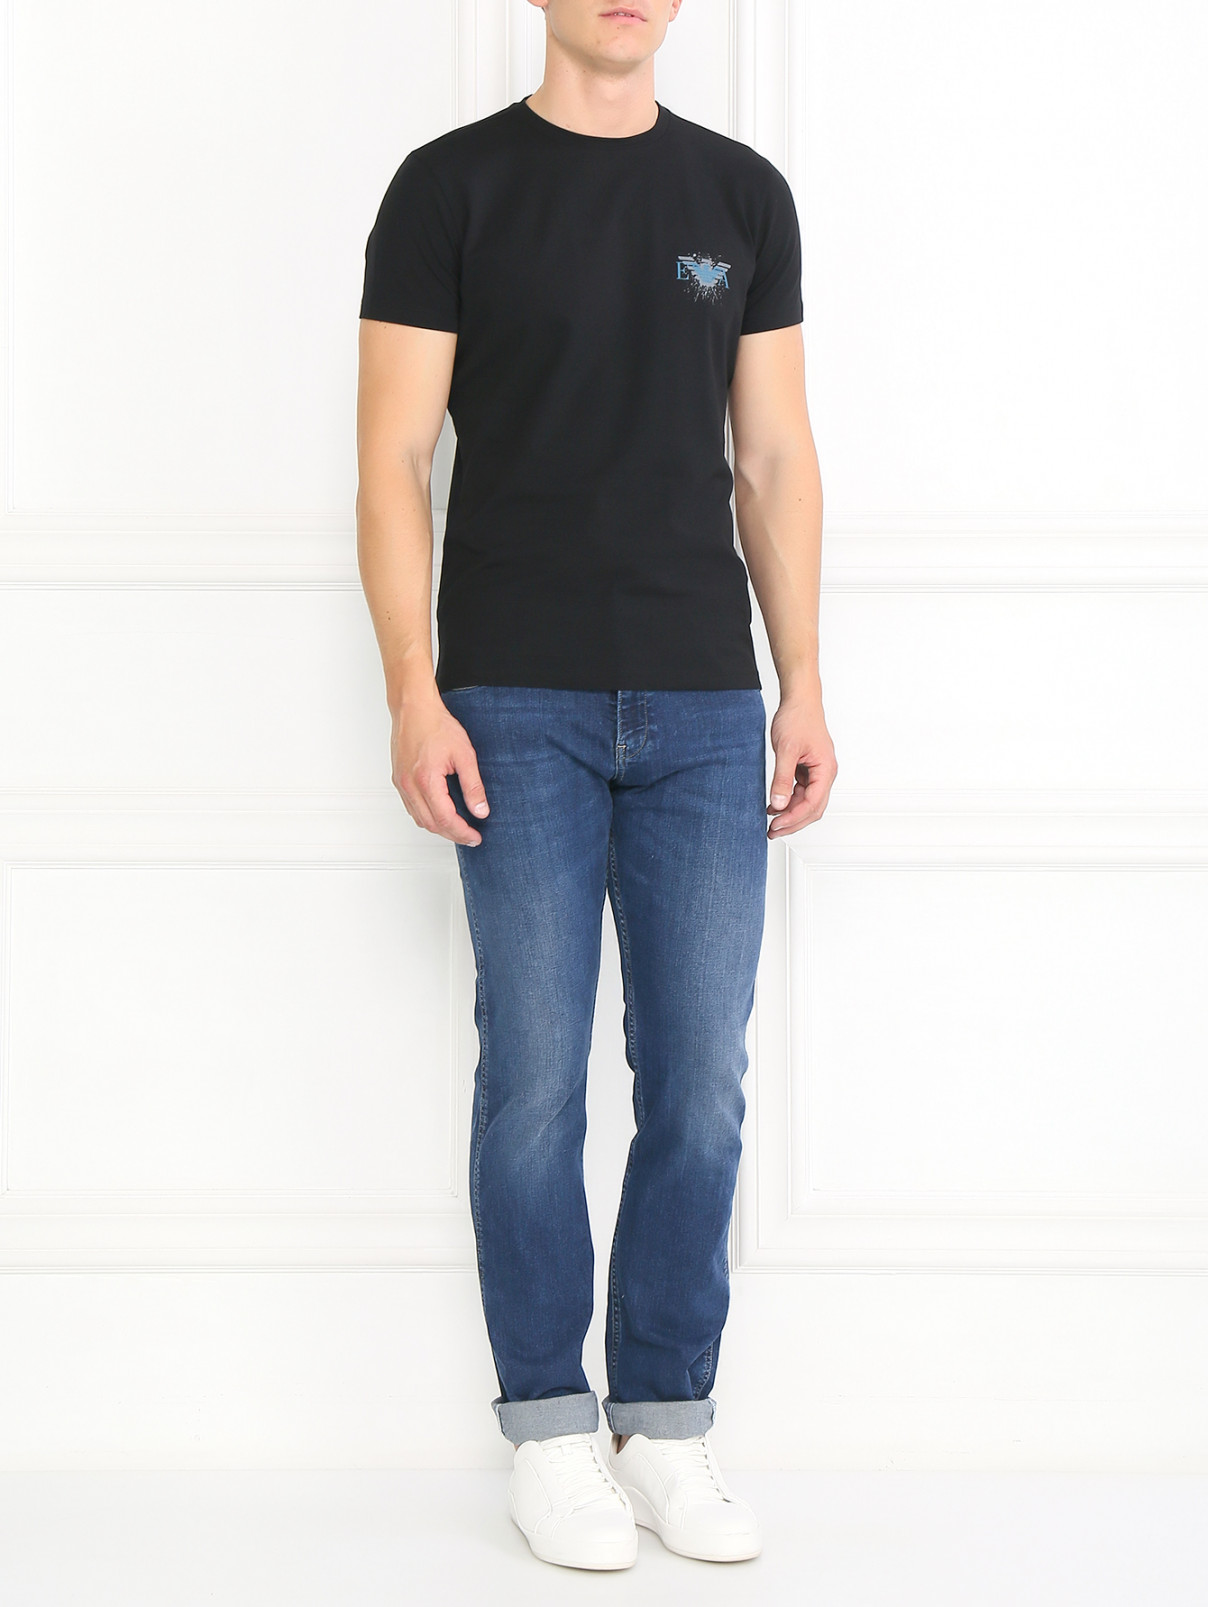 Базовая футболка из хлопка Emporio Armani  –  Модель Общий вид  – Цвет:  Черный